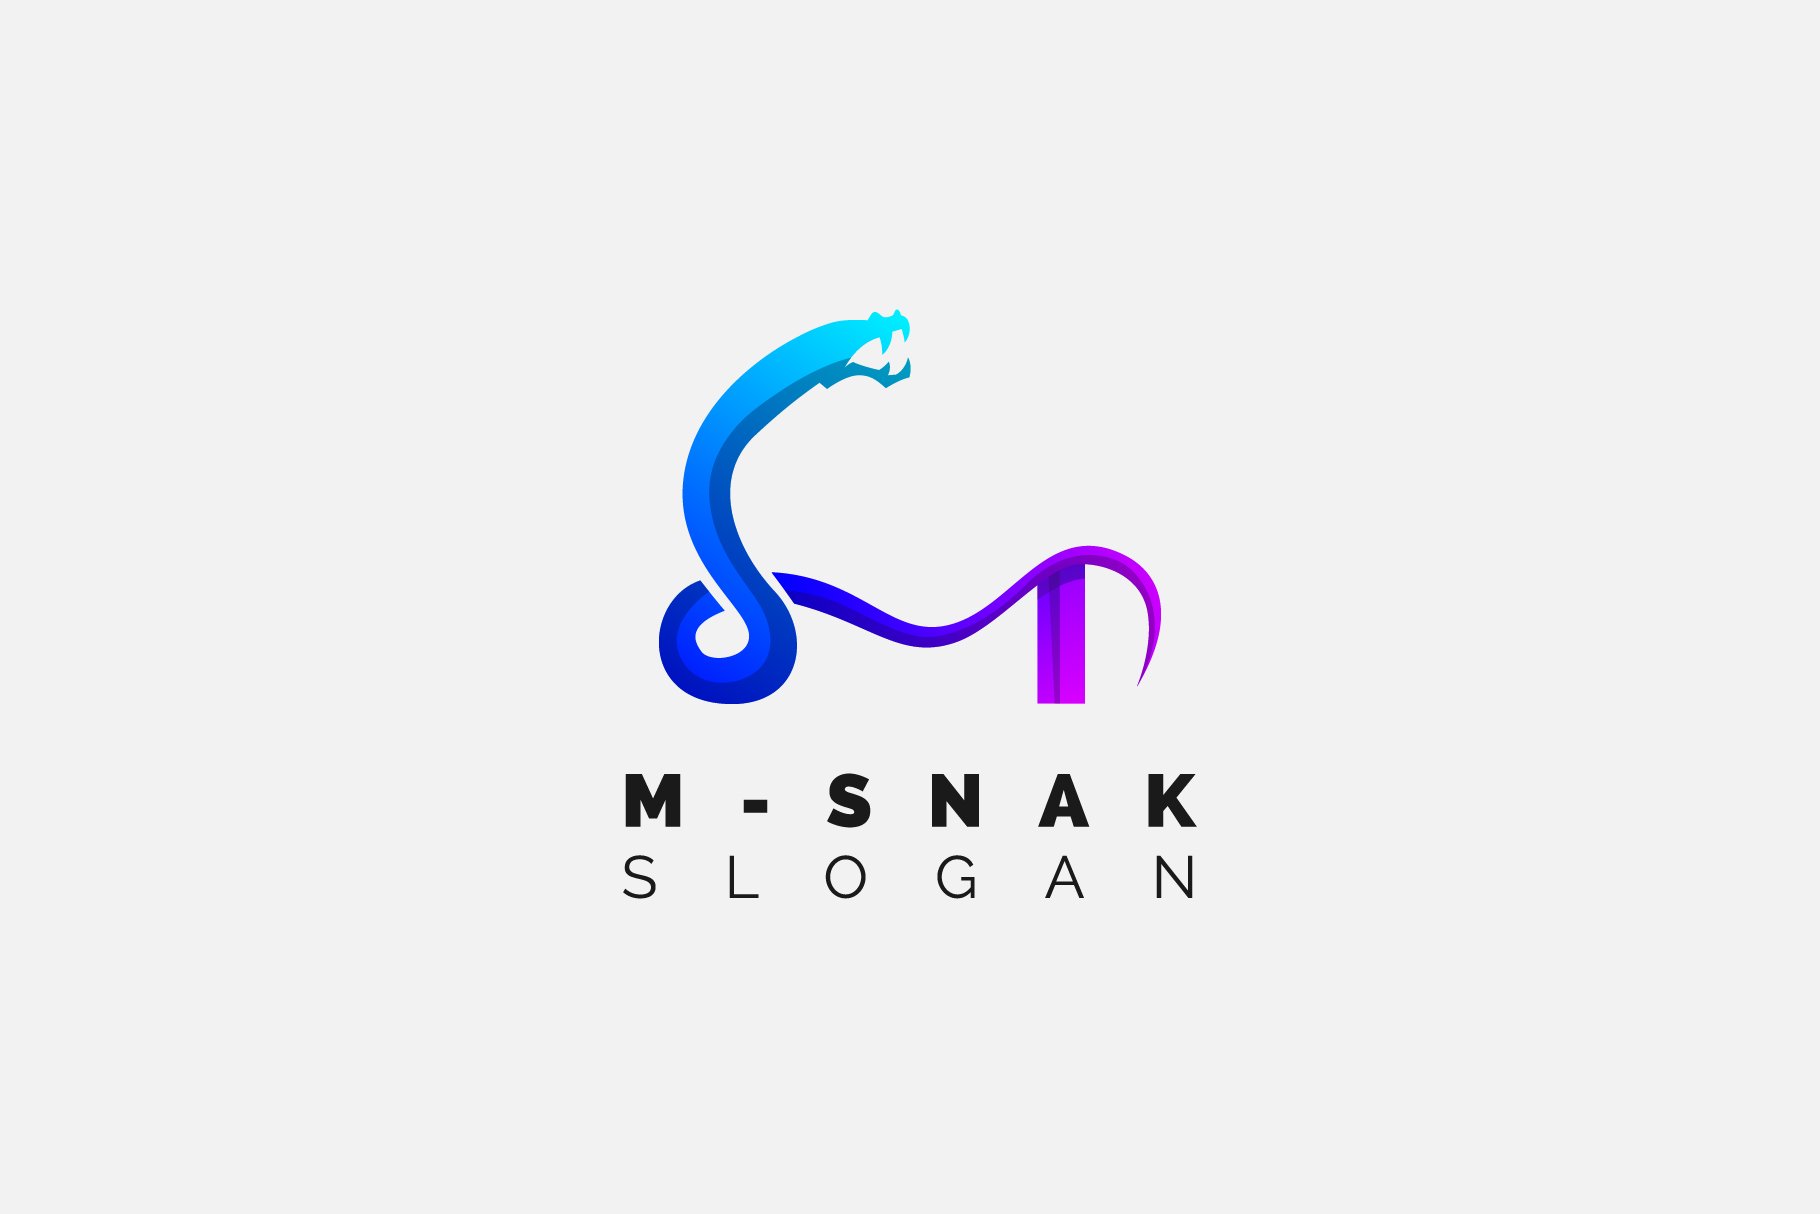 Snake Letter M Gradient Logo design cover image.